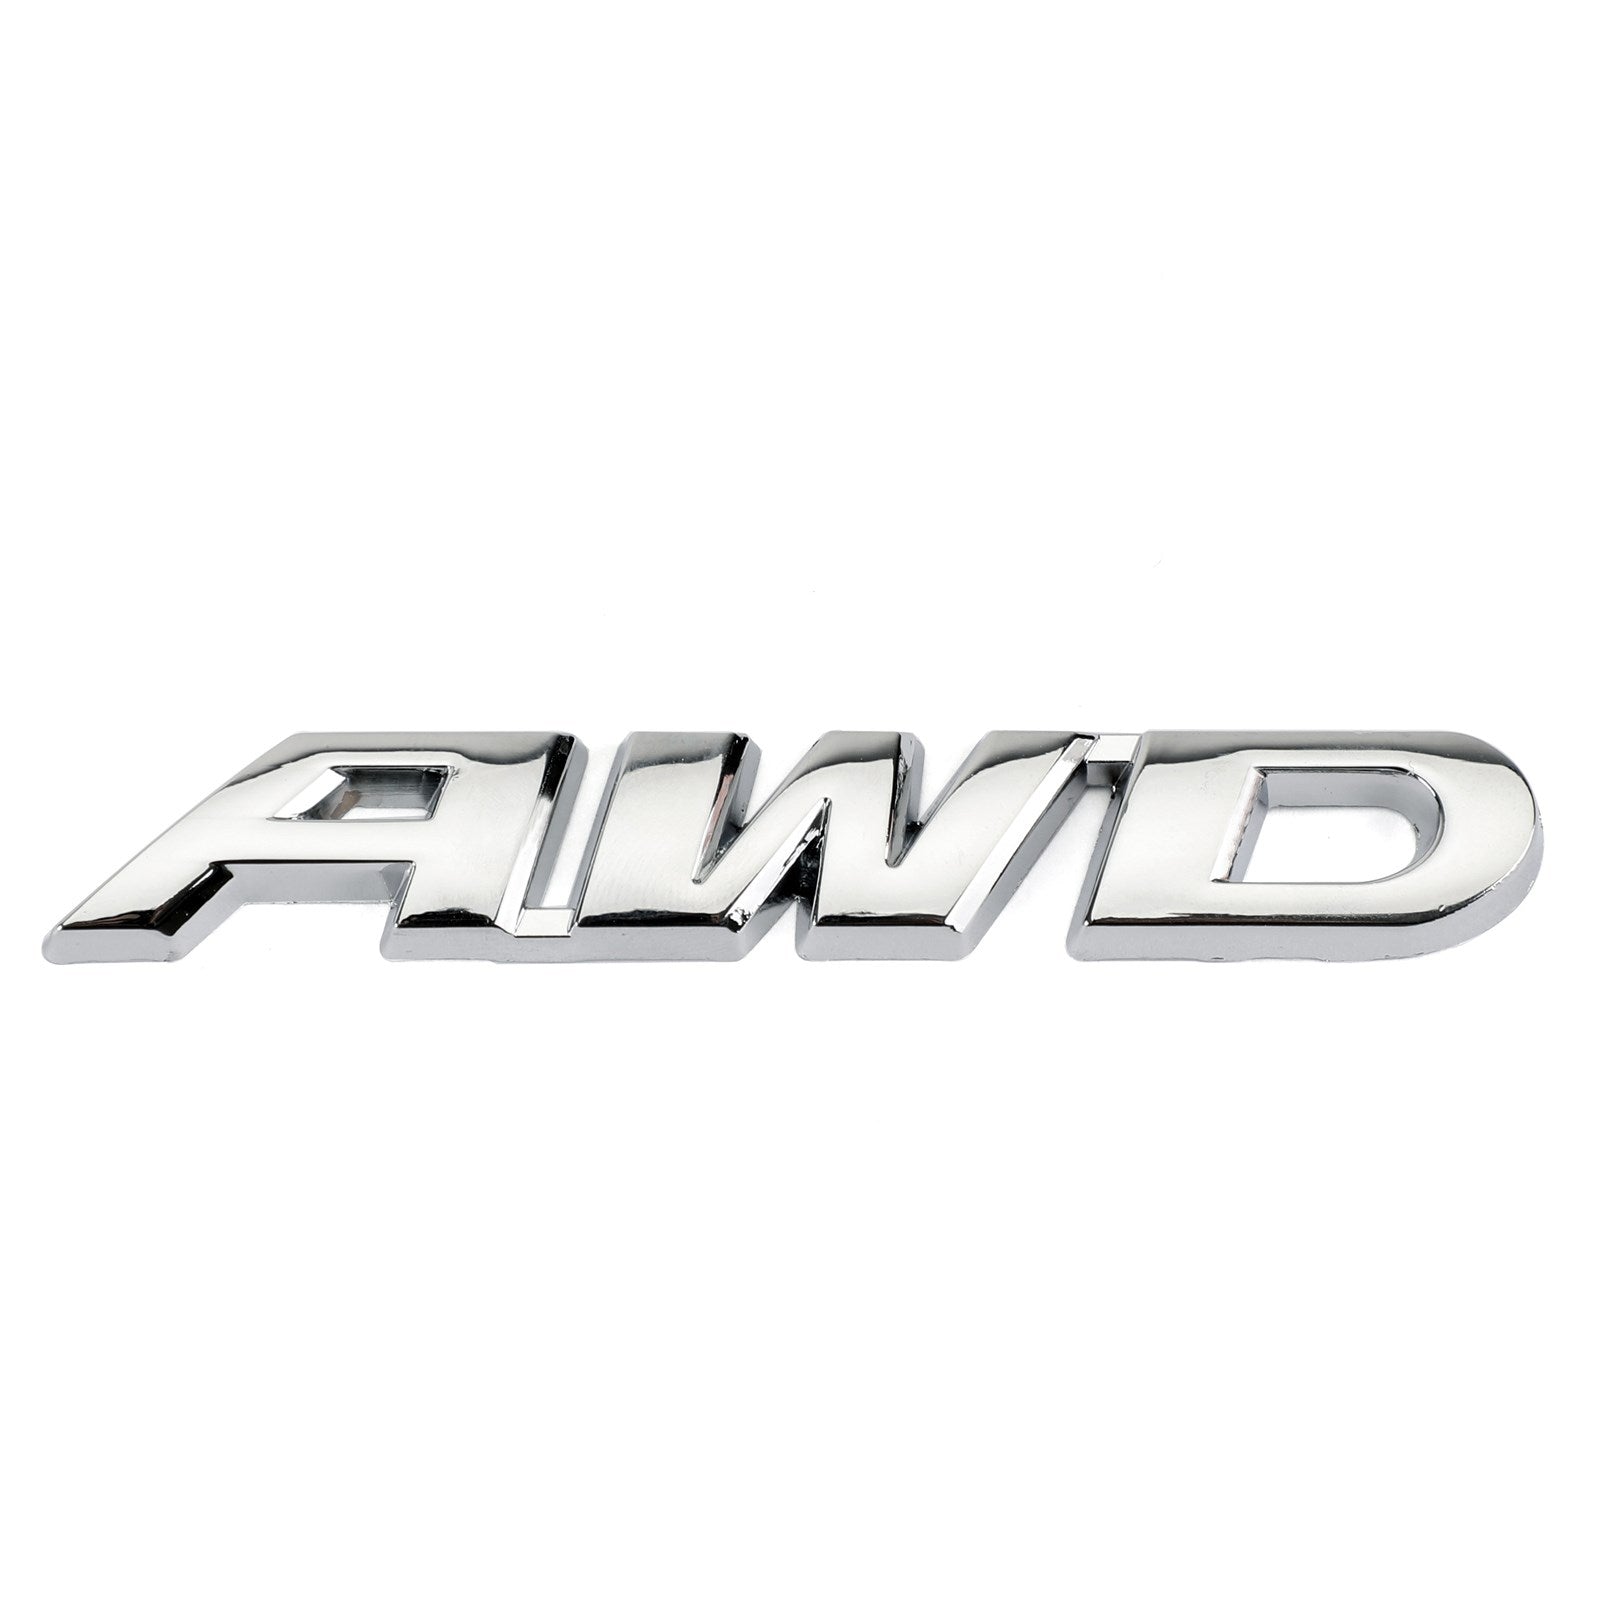 AWD mot lettre métal voiture camion autocollant emblème insigne décalcomanie Auto voiture générique